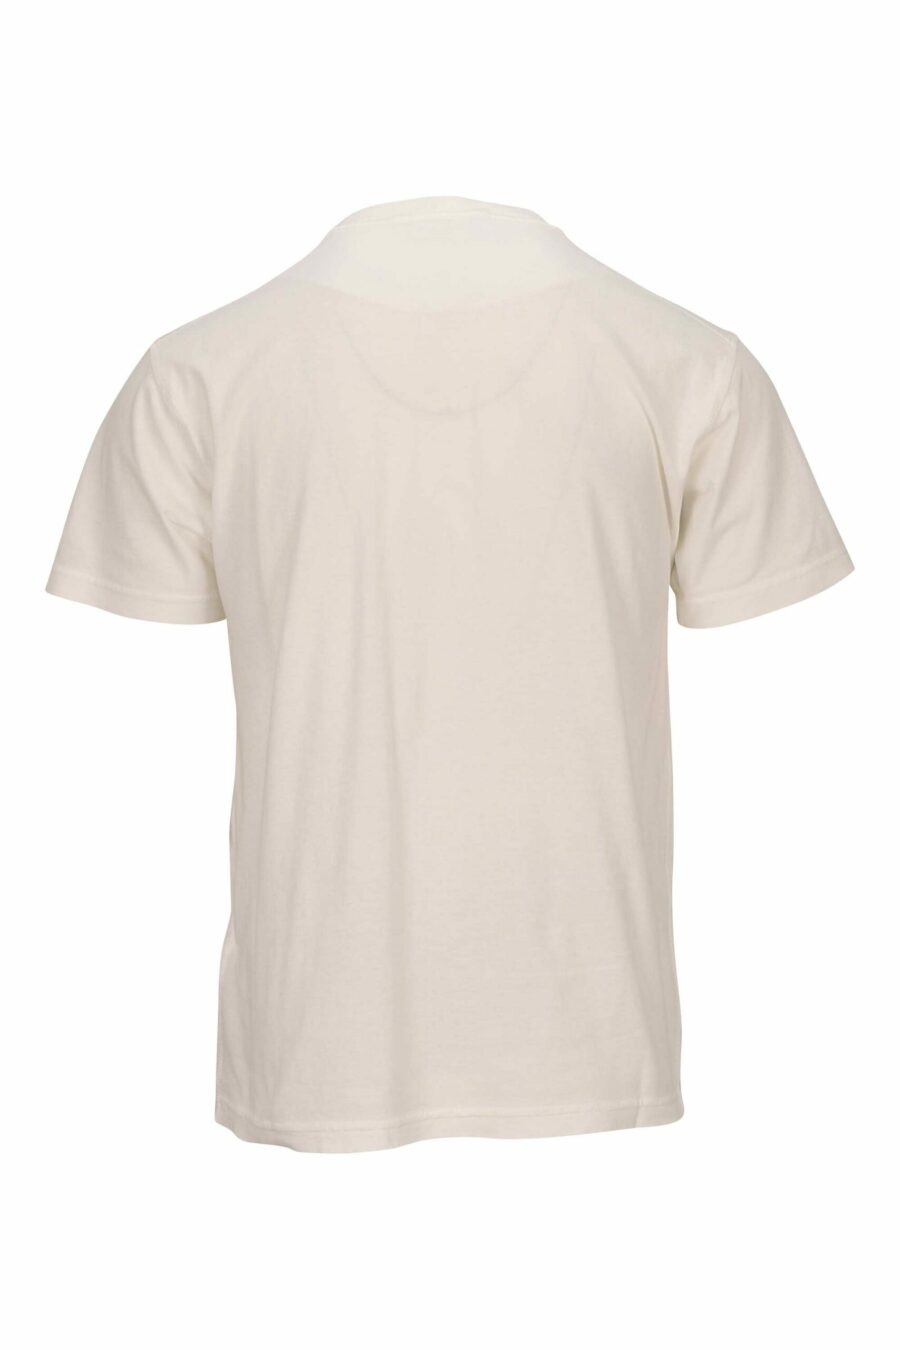 T-shirt blanc avec logo mini-boussole - 8052572902222 1 à l'échelle